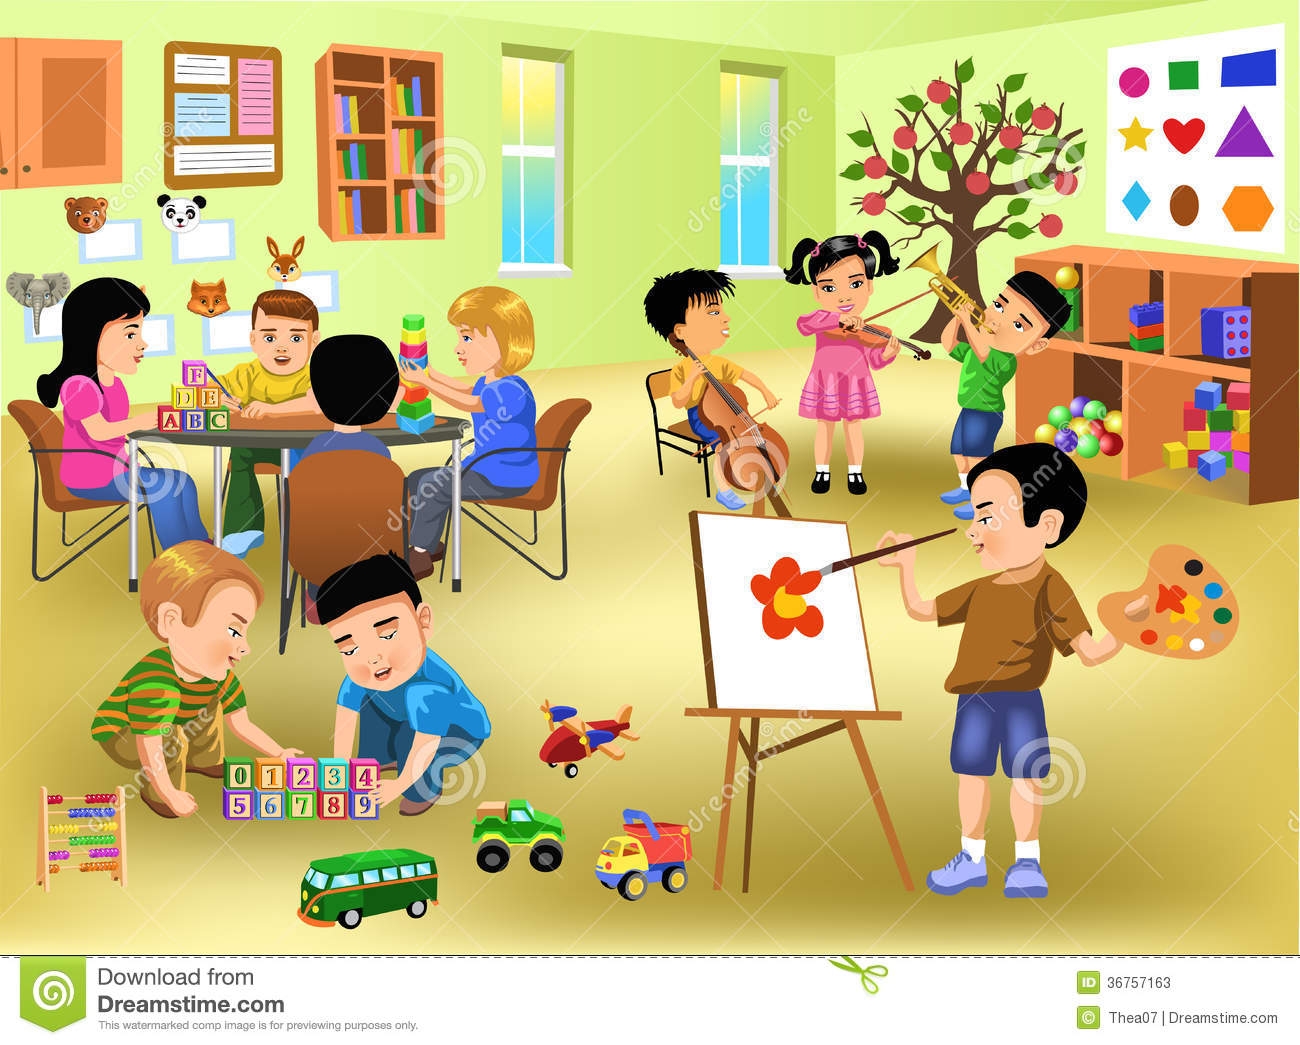 Preschool classroom clipart